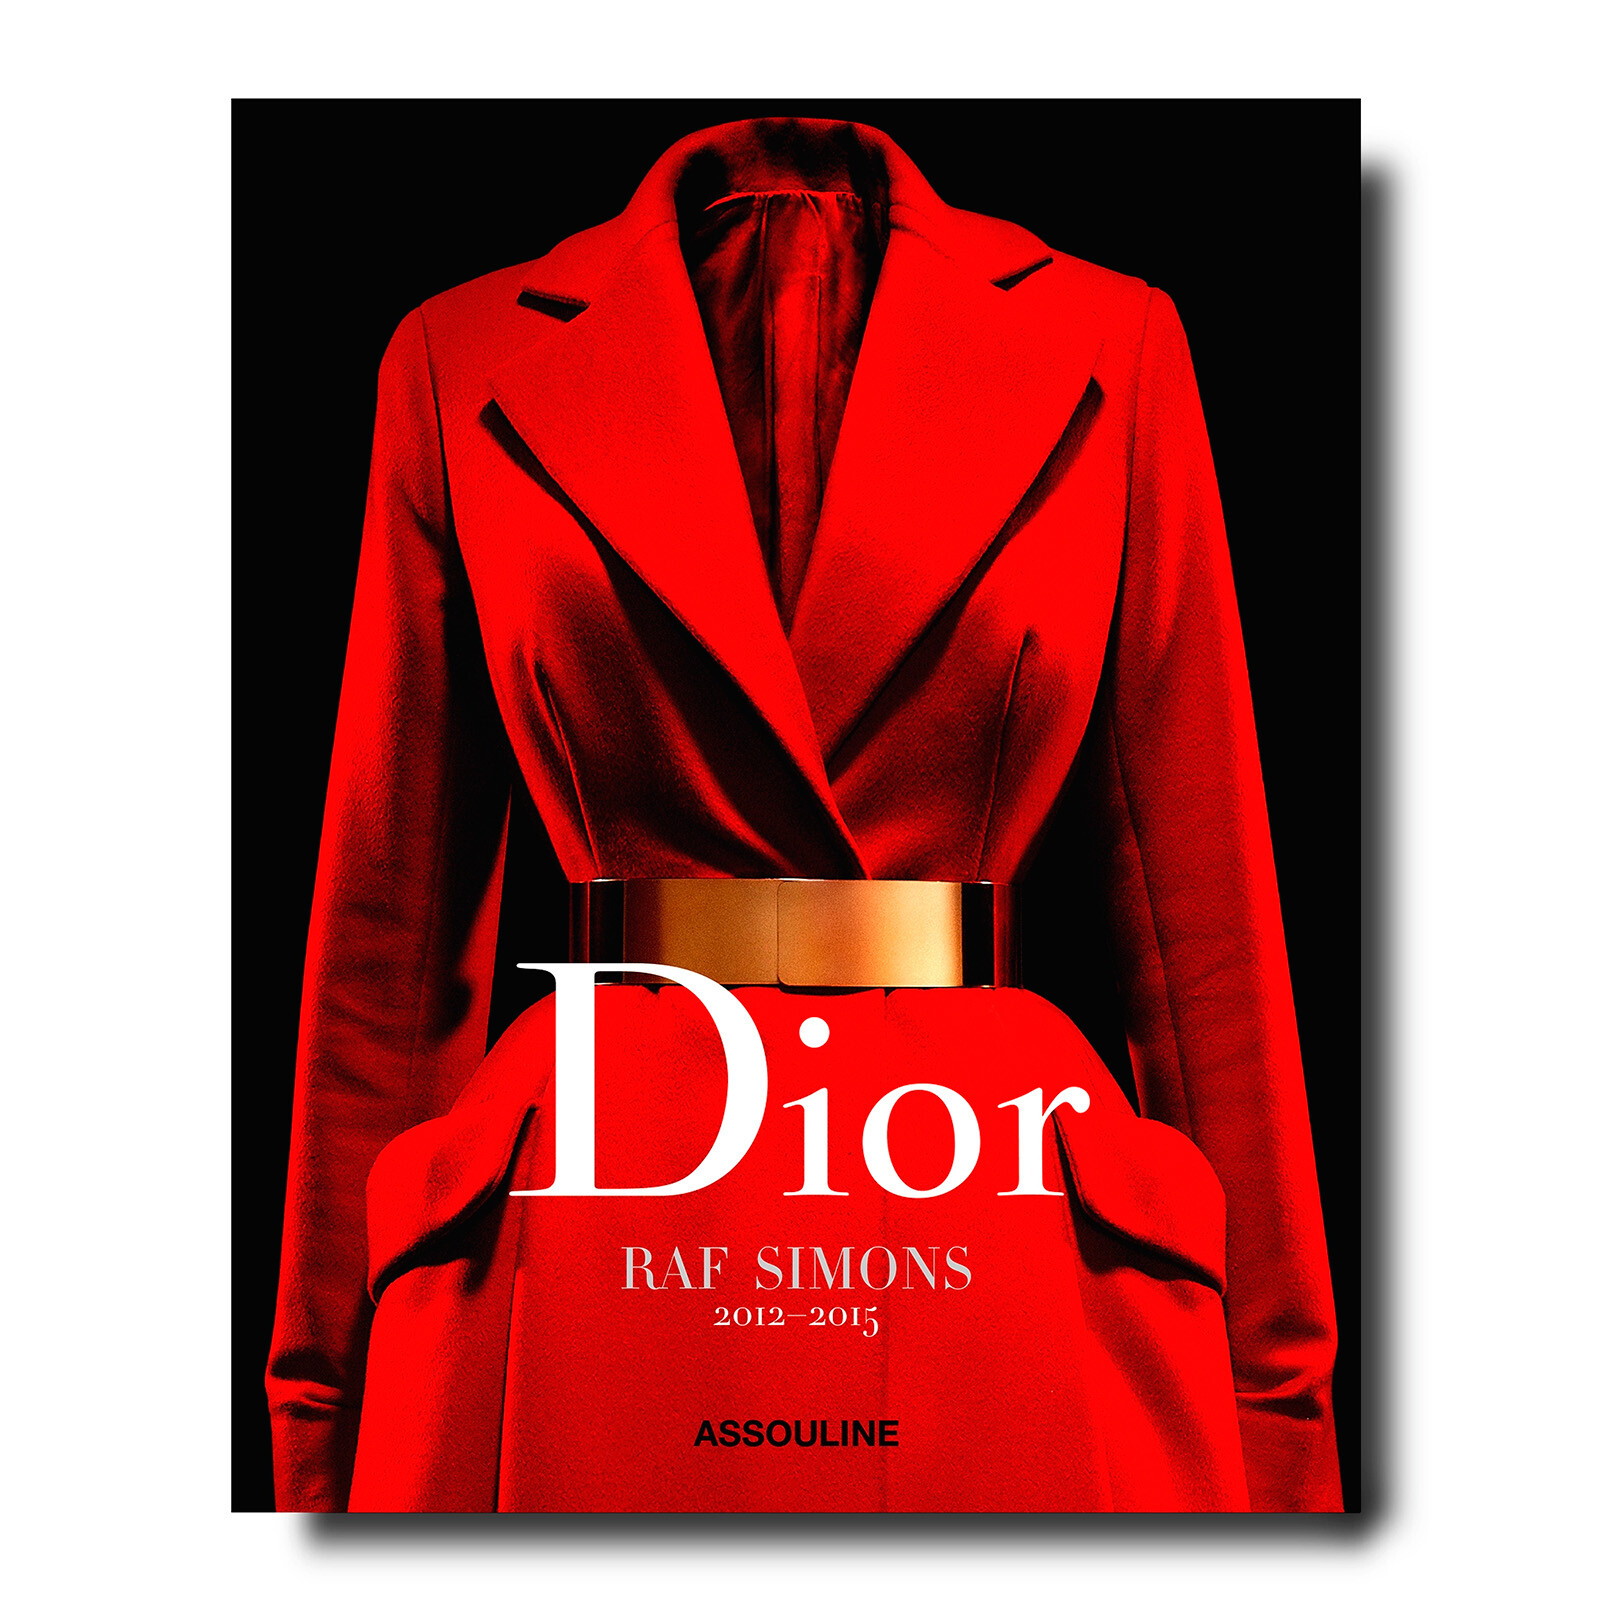 Dior выпустит новую книгу об эпохе Рафа Симонса в модном доме